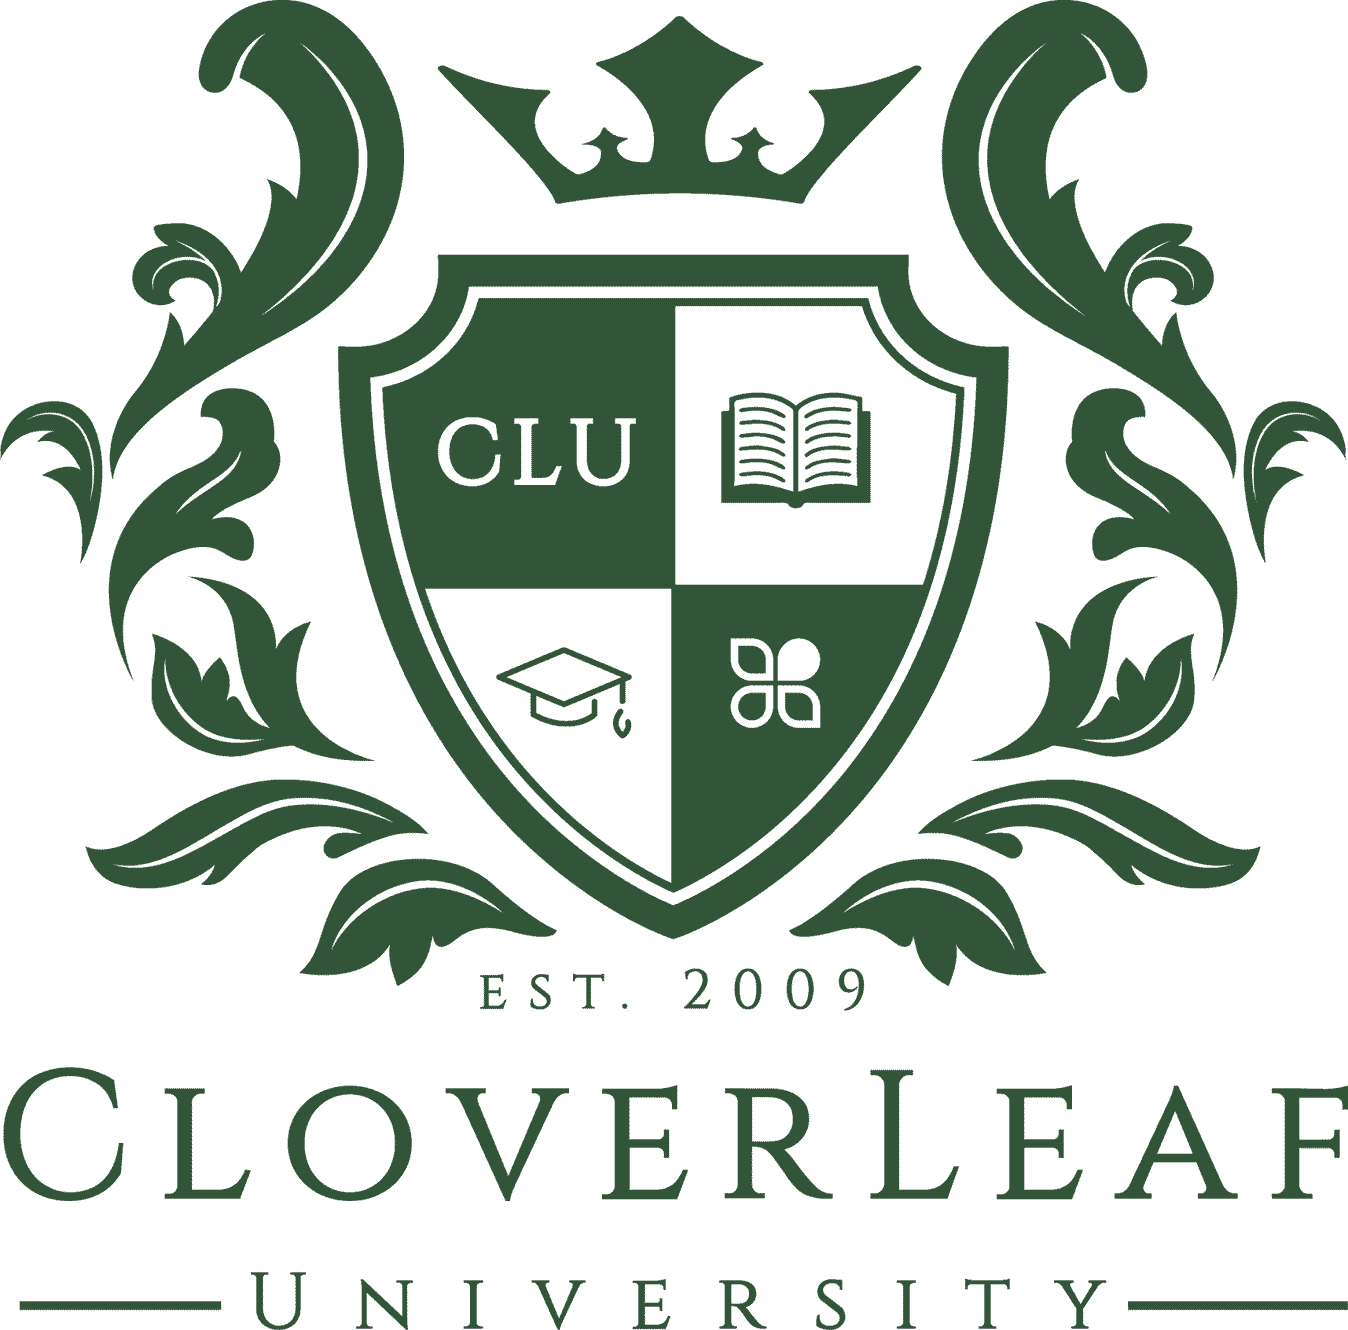 clover leaf university crest